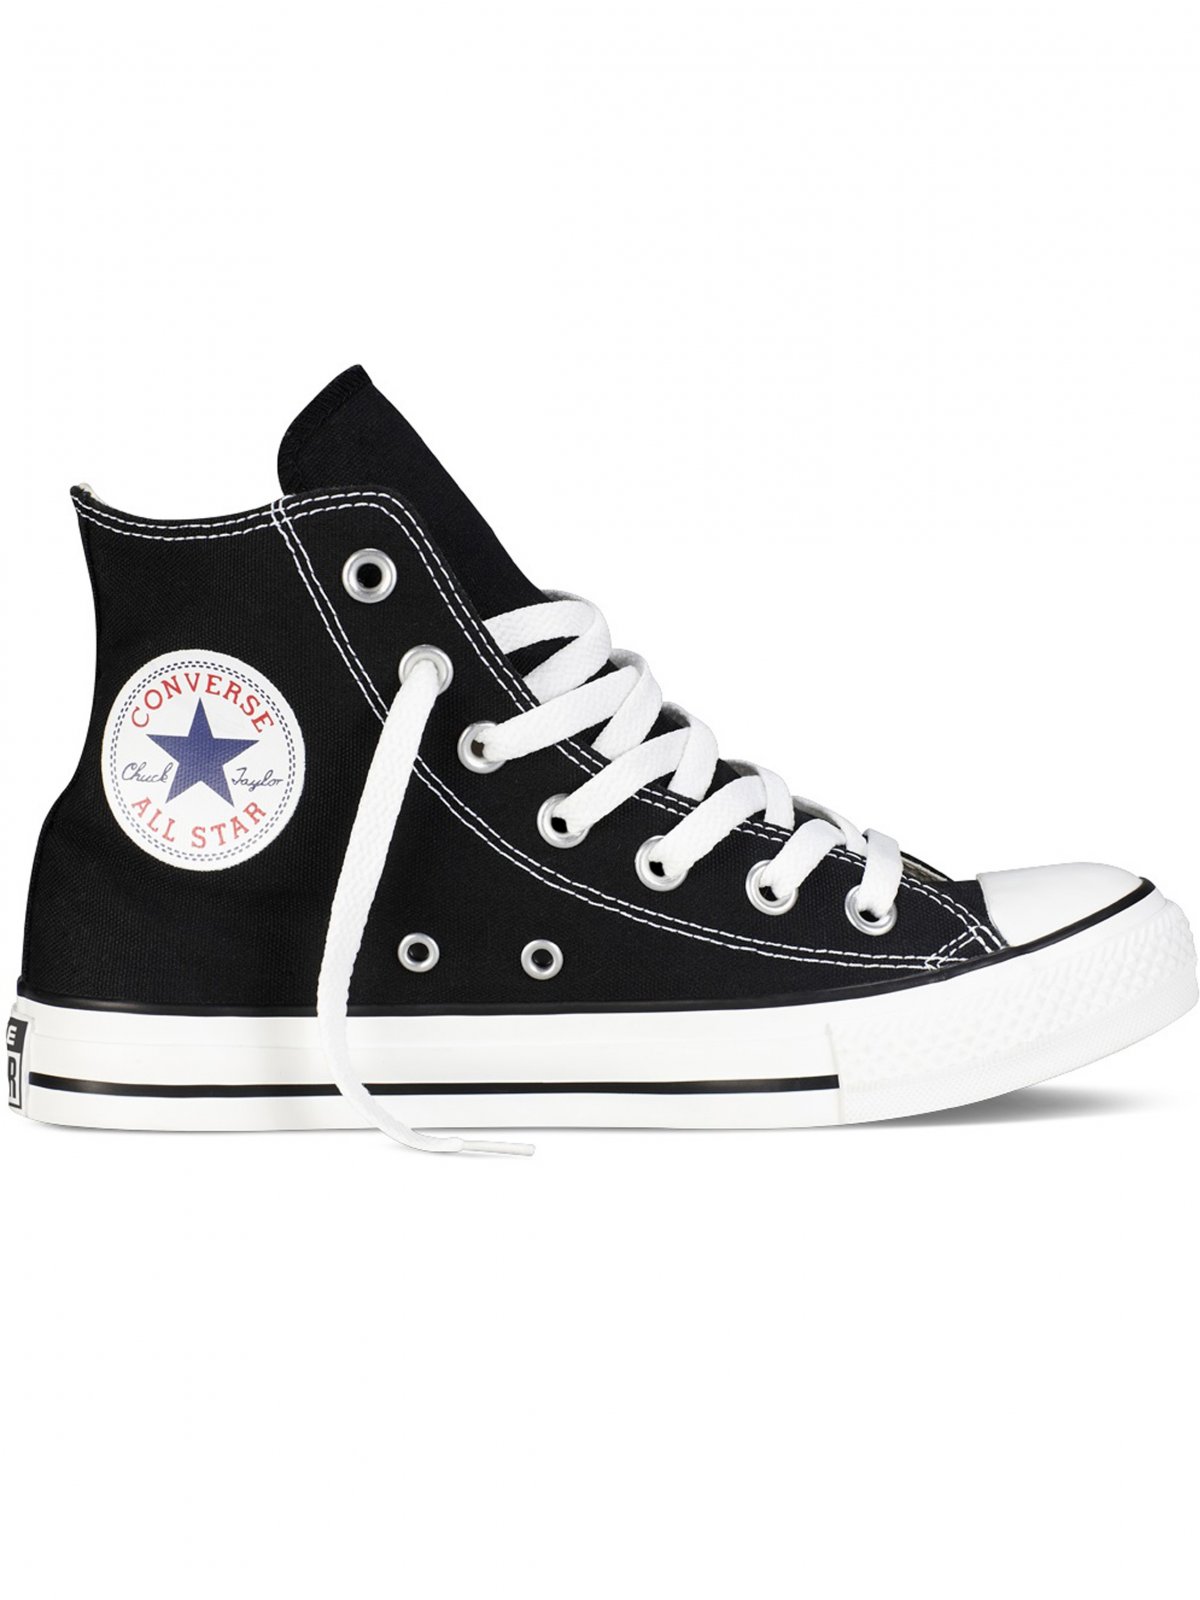 Polar enlazar Más que nada Converse All Star Unisex Chuck Taylor High Top Sneakers - Black/White